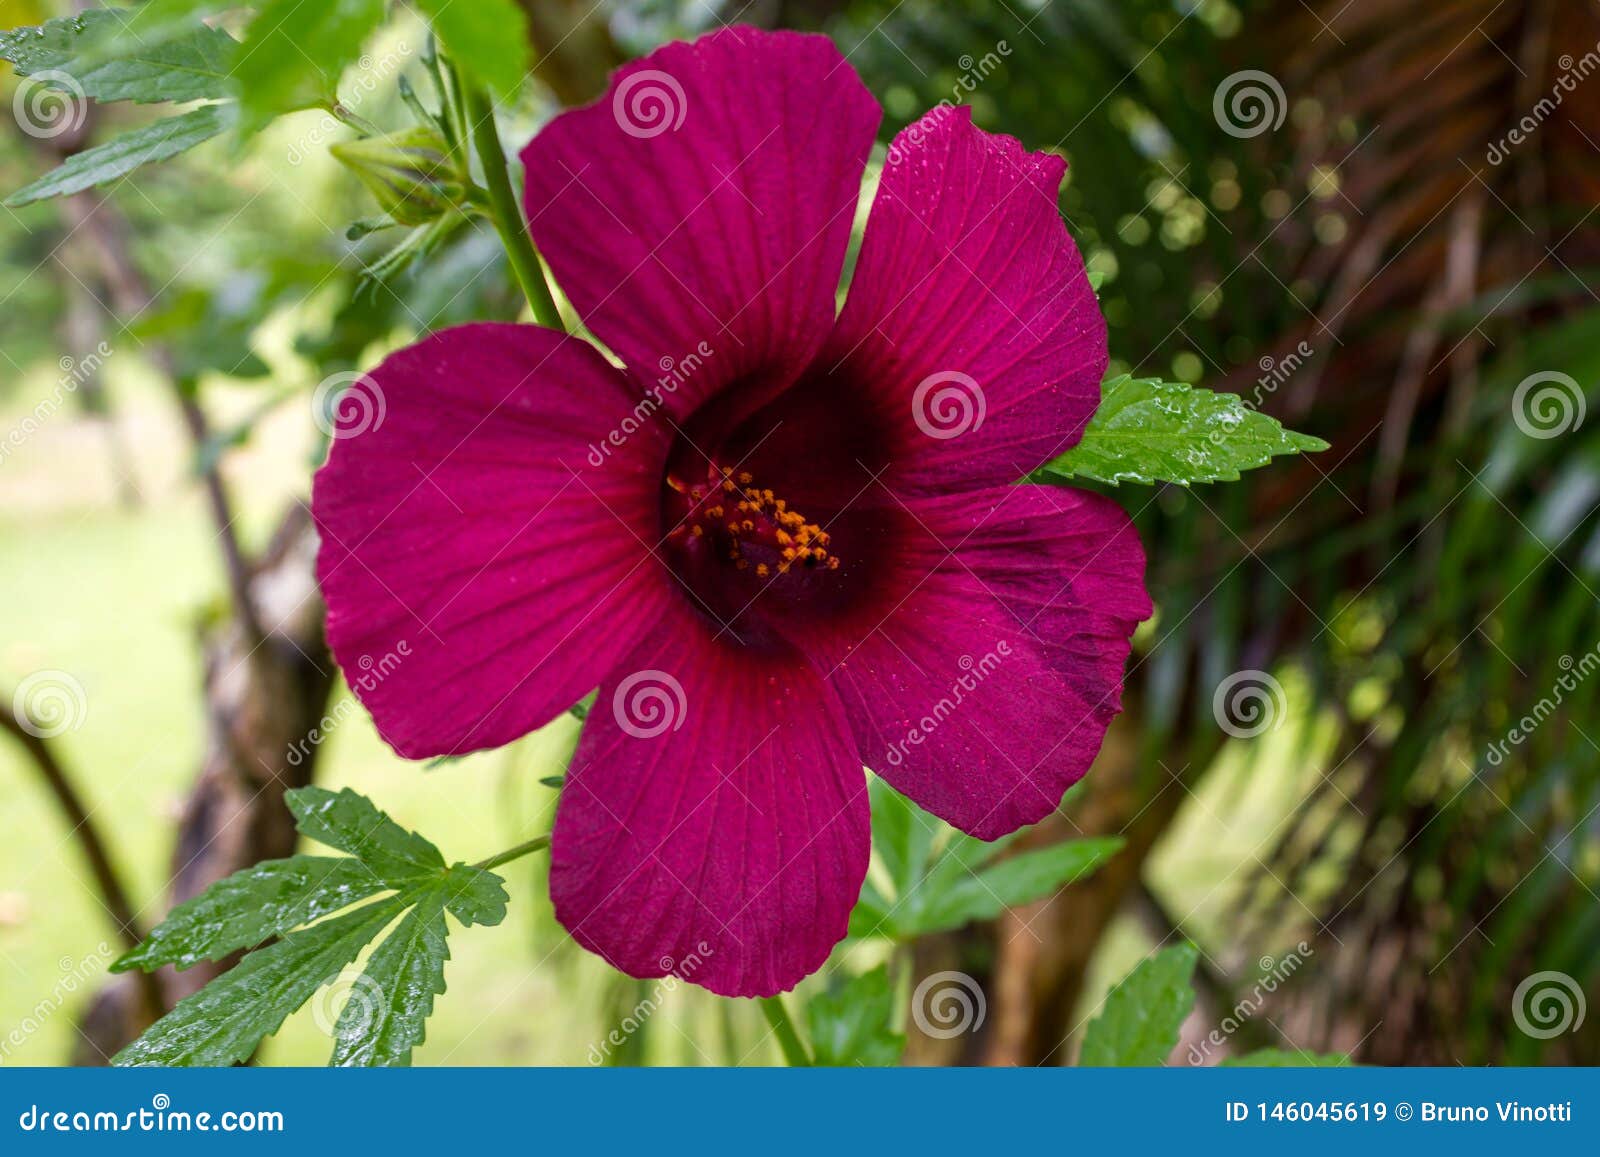 violet flower in